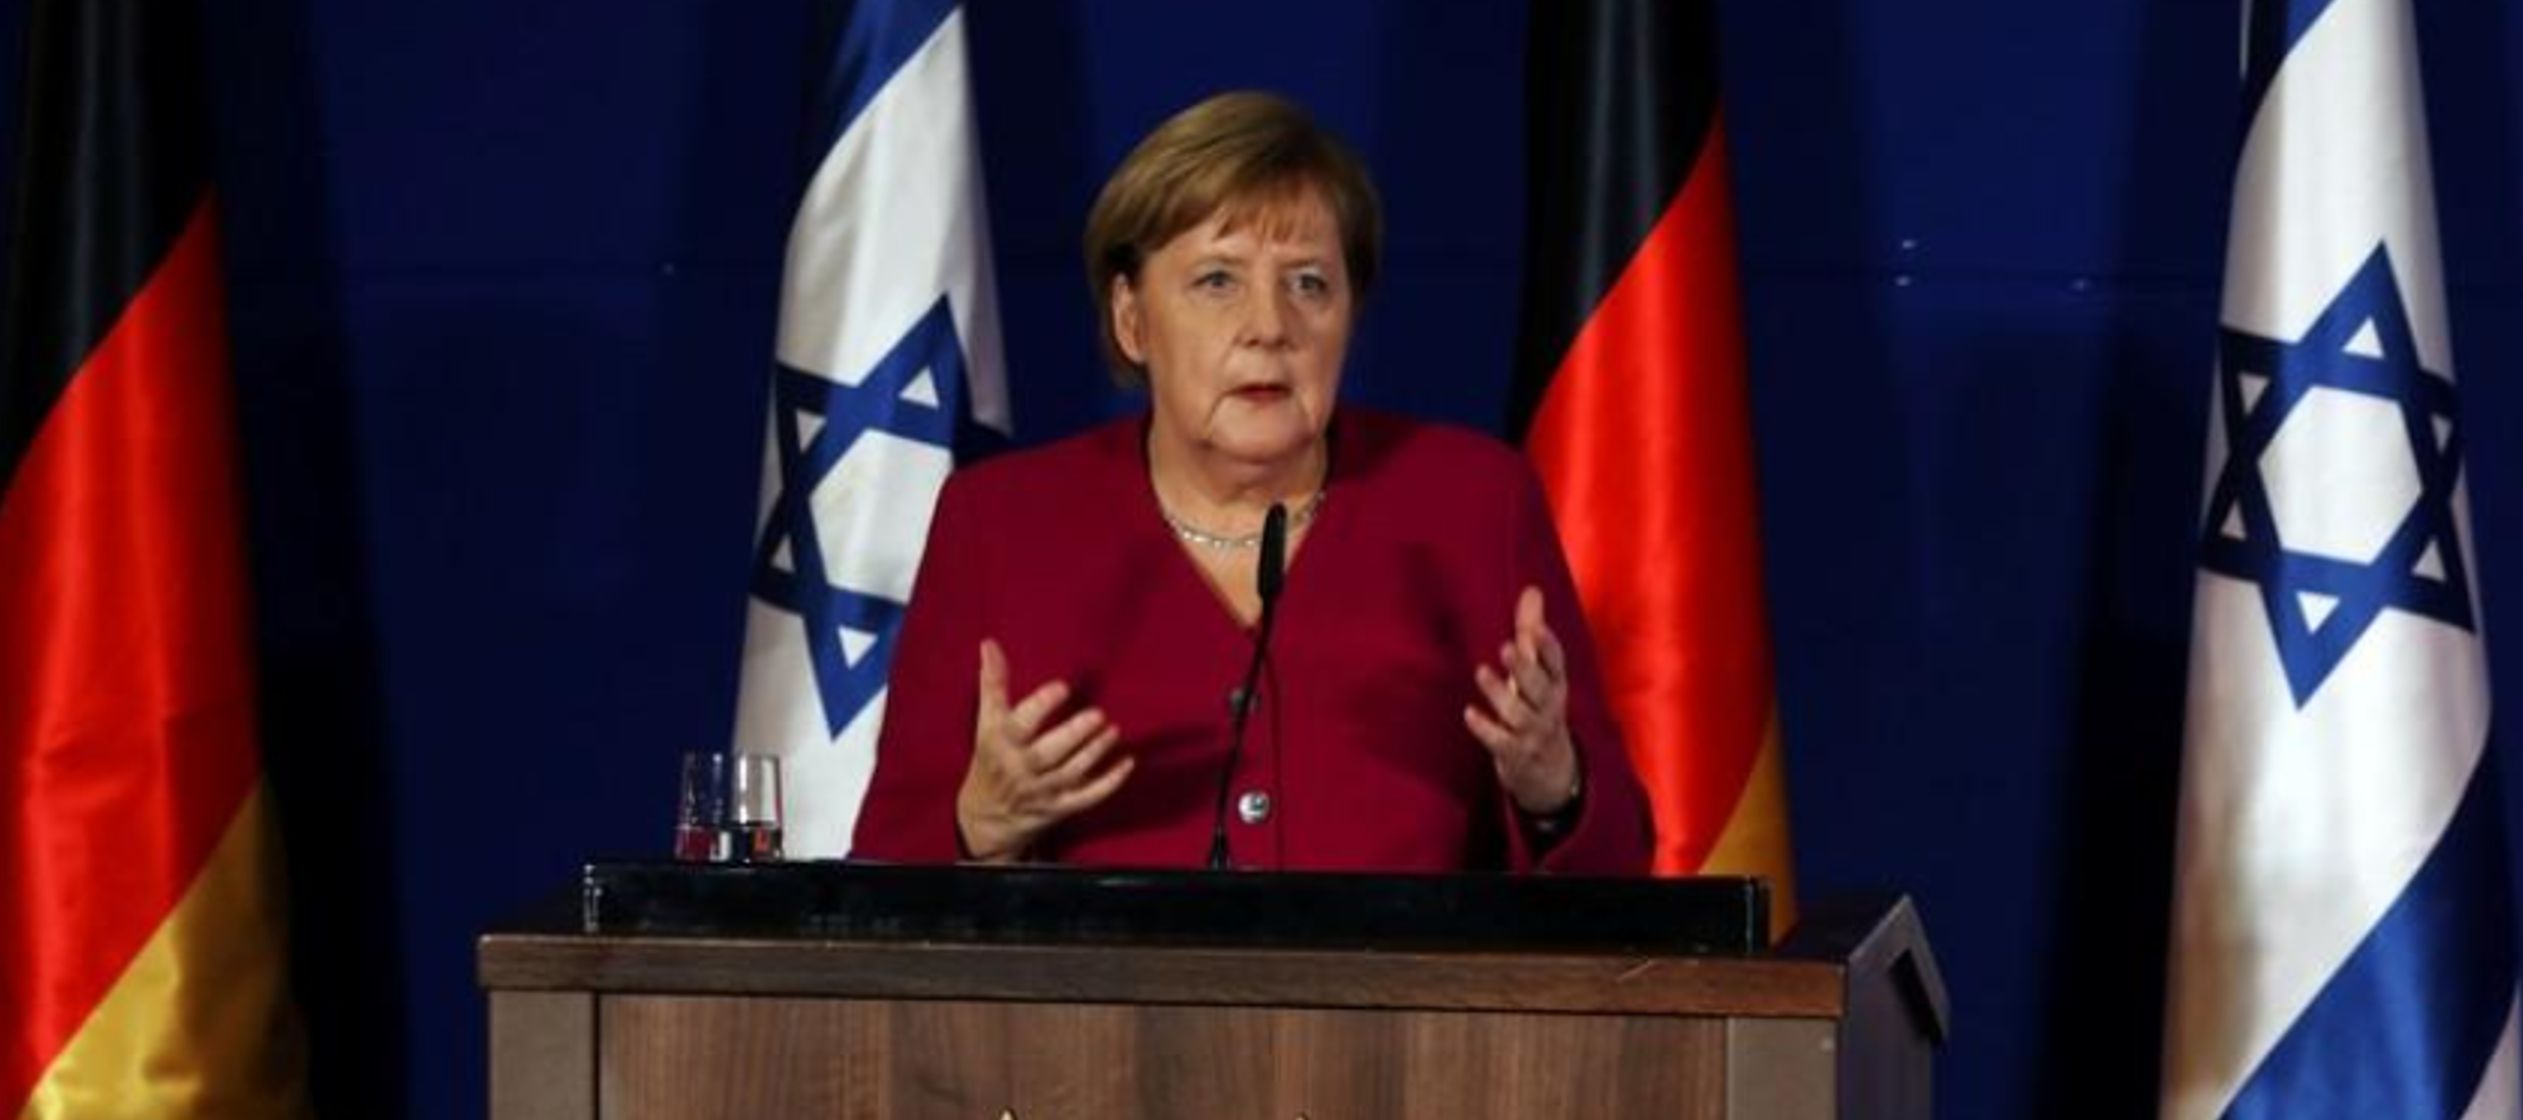 Después de un encuentro con Netanyahu, Merkel abordó los problemas de Medio Oriente...